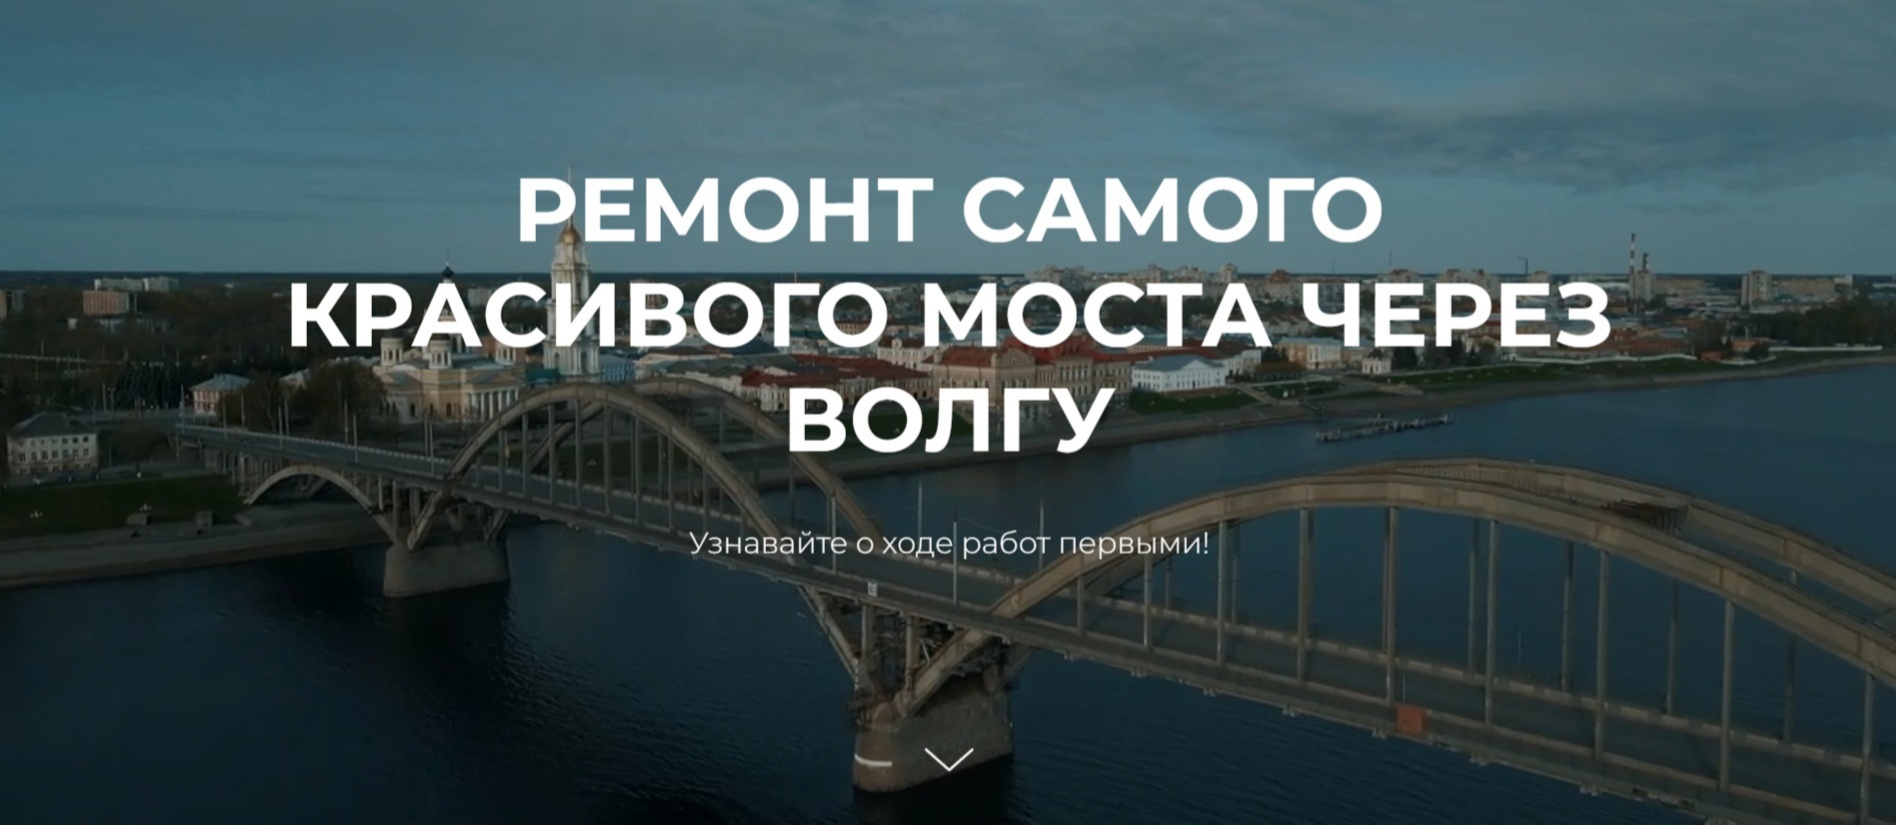 В Рыбинске запустили сайт о ремонте Волжского моста